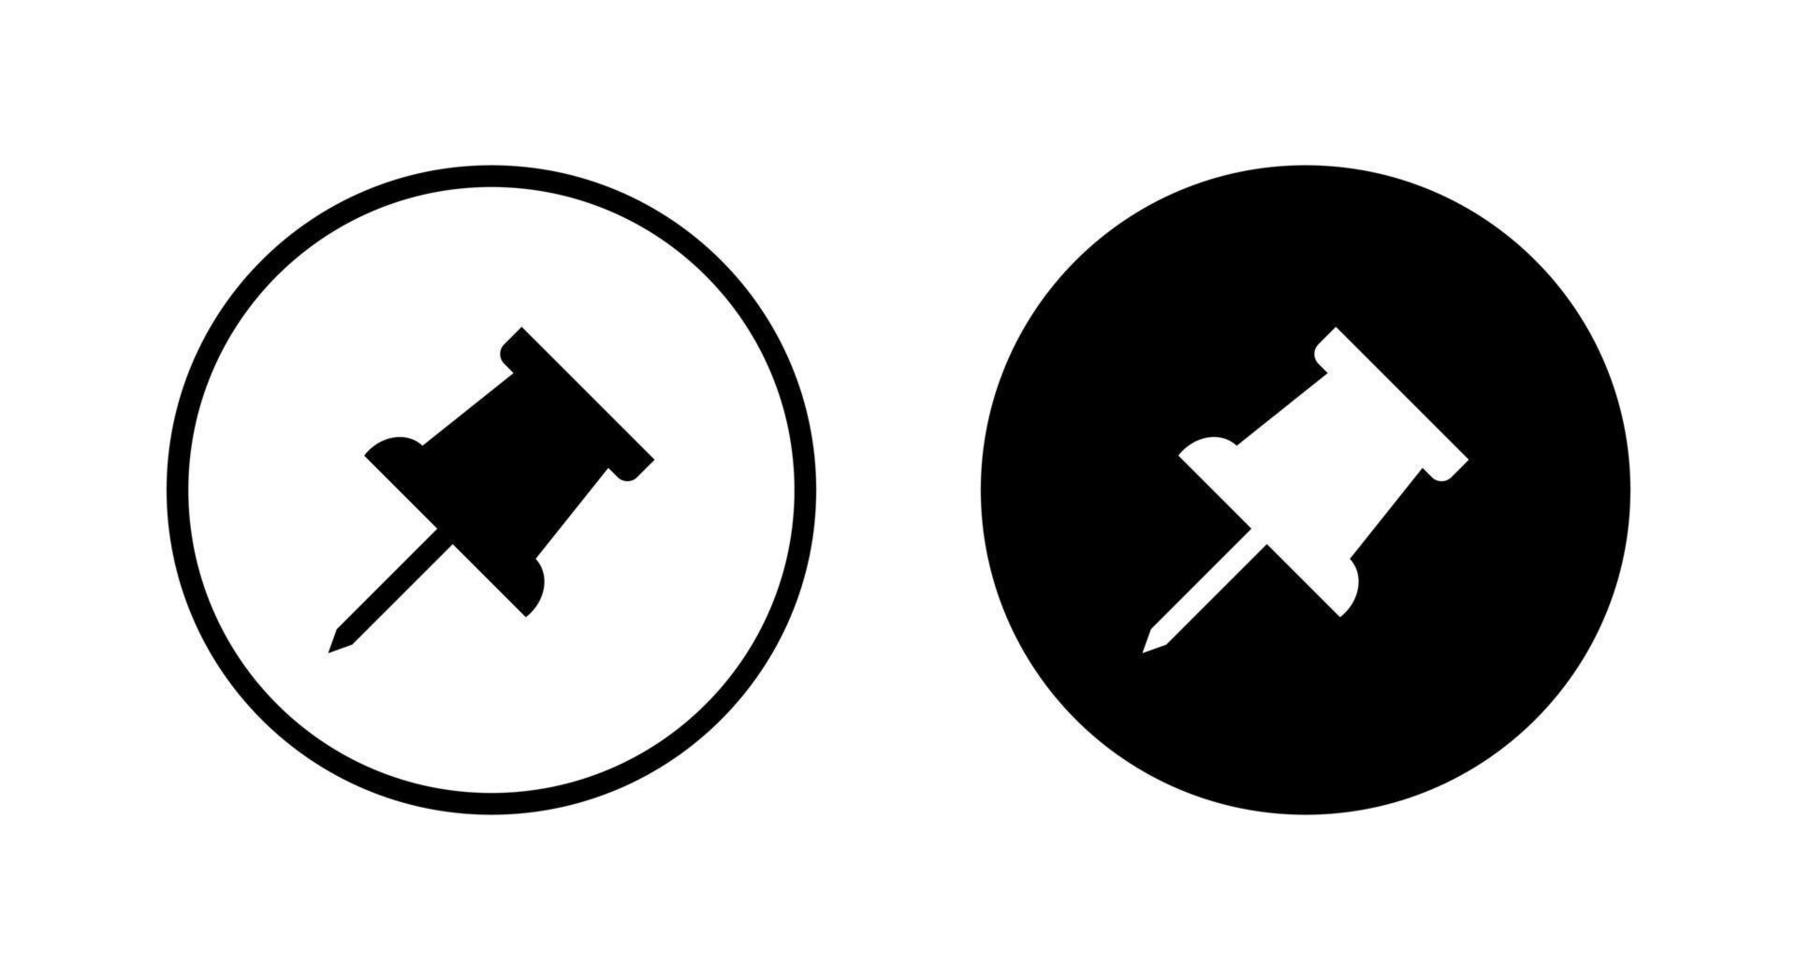 punaise, vecteur d'icône de punaise isolé sur fond de cercle